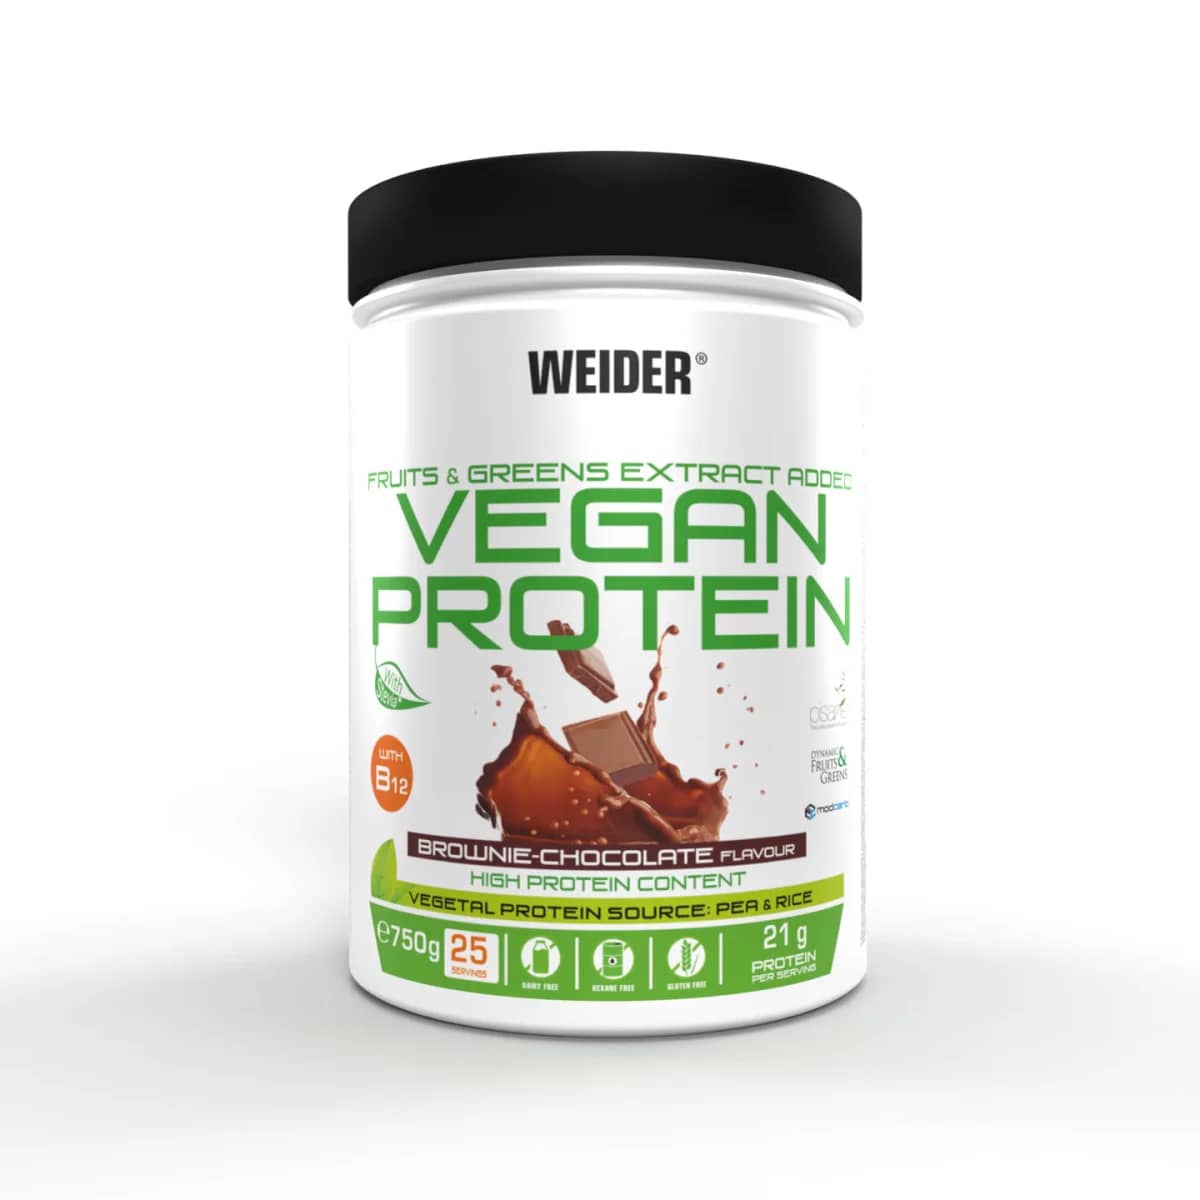 Weider Vegan Protein (750g Dose)